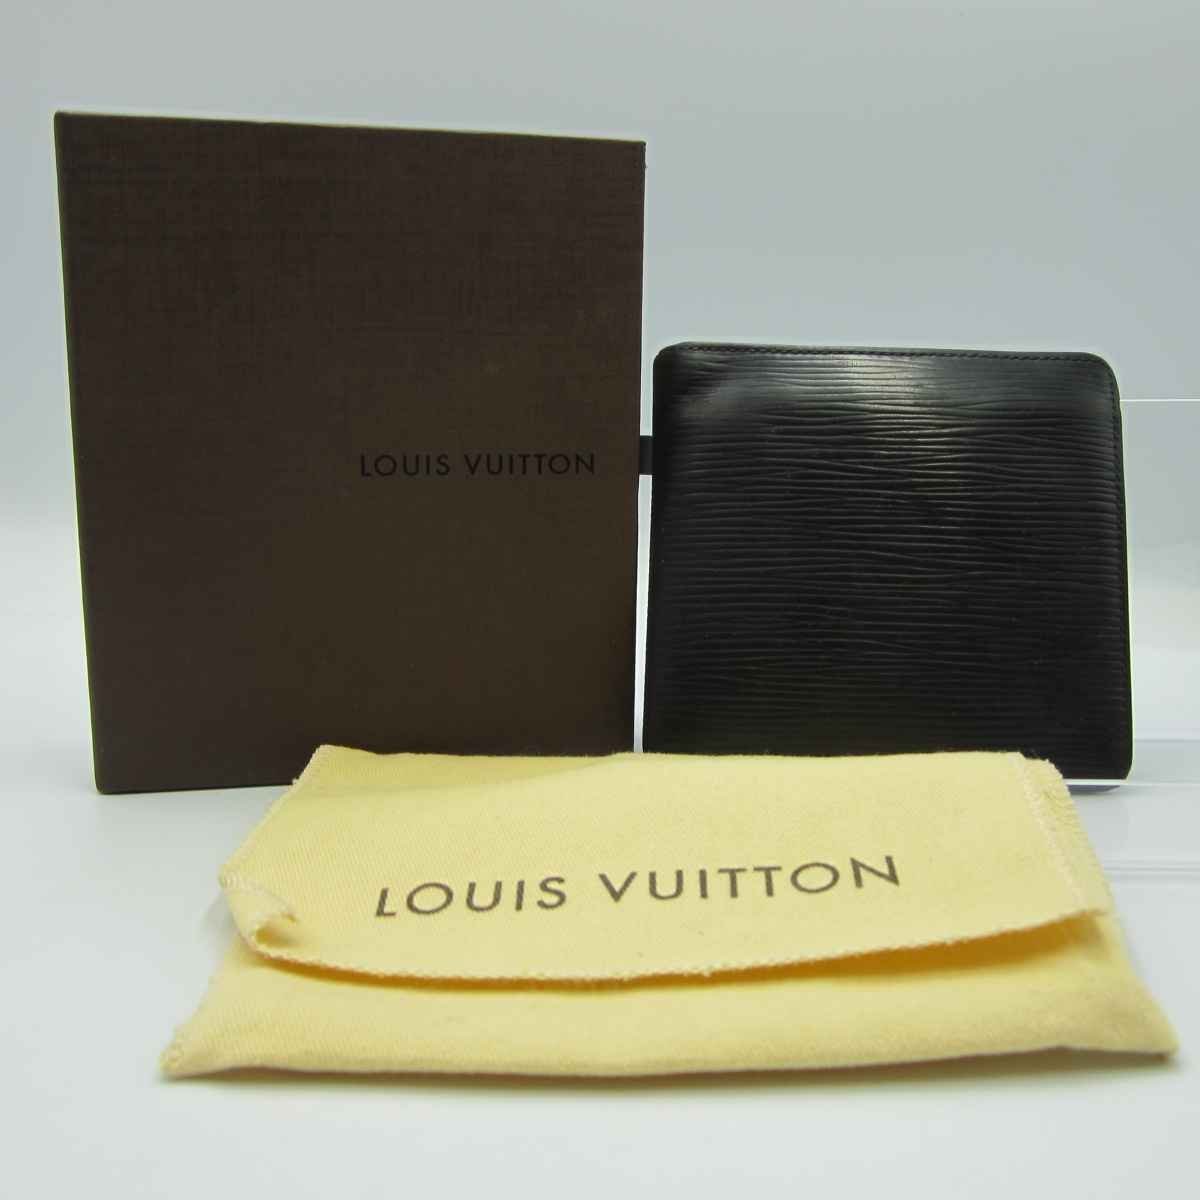 LOUIS VUITTON M60612 ポルトフォイユ マルコ＜財布＞SP0075 ヴィトン メンズ エピレザー ノワール コンパクトウォレット 折り畳み財布の画像1